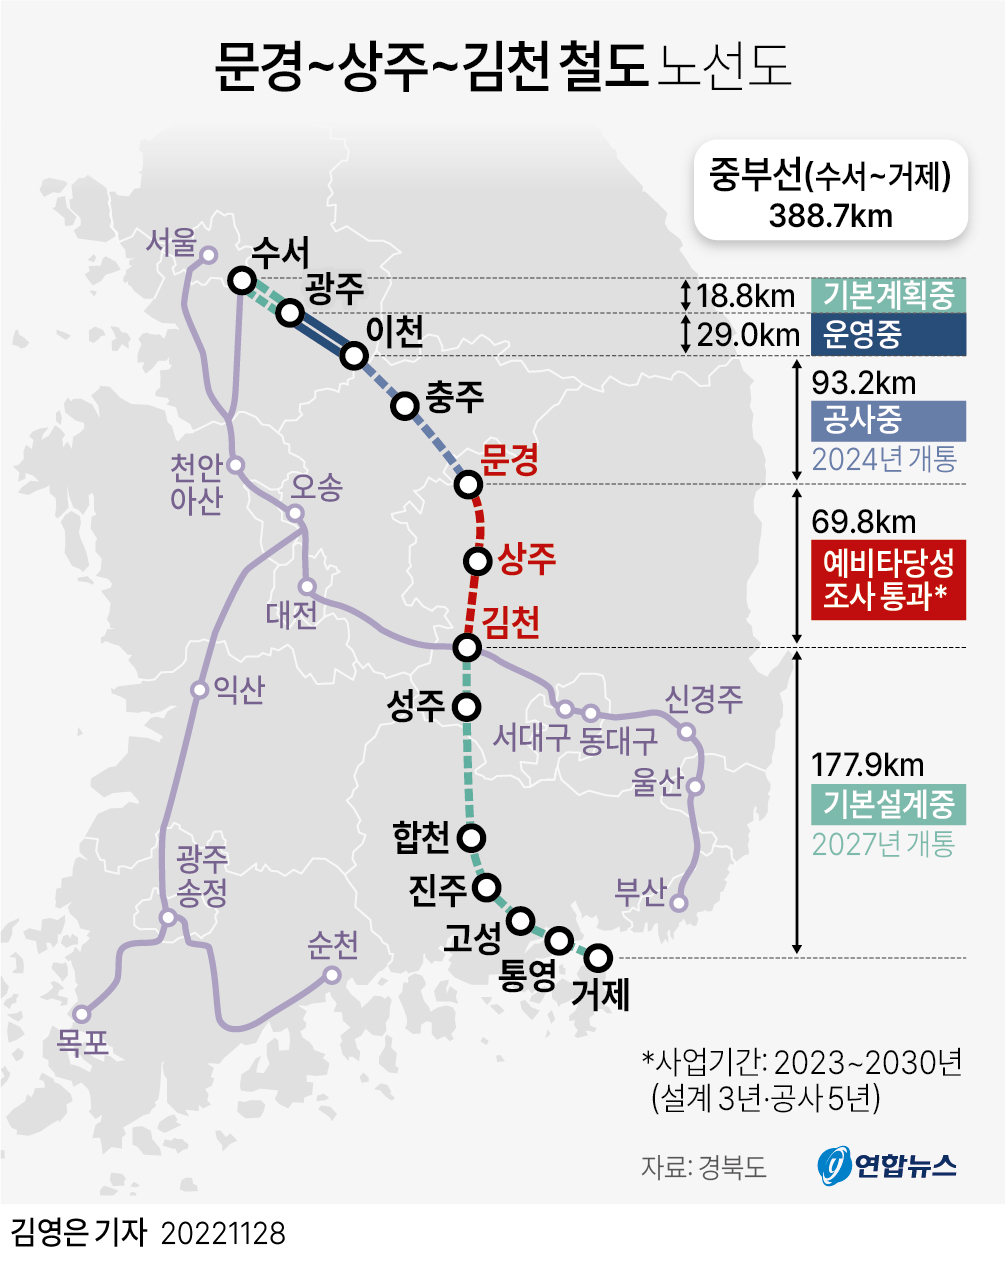 [그래픽] 문경~상주~김천 철도 노선도